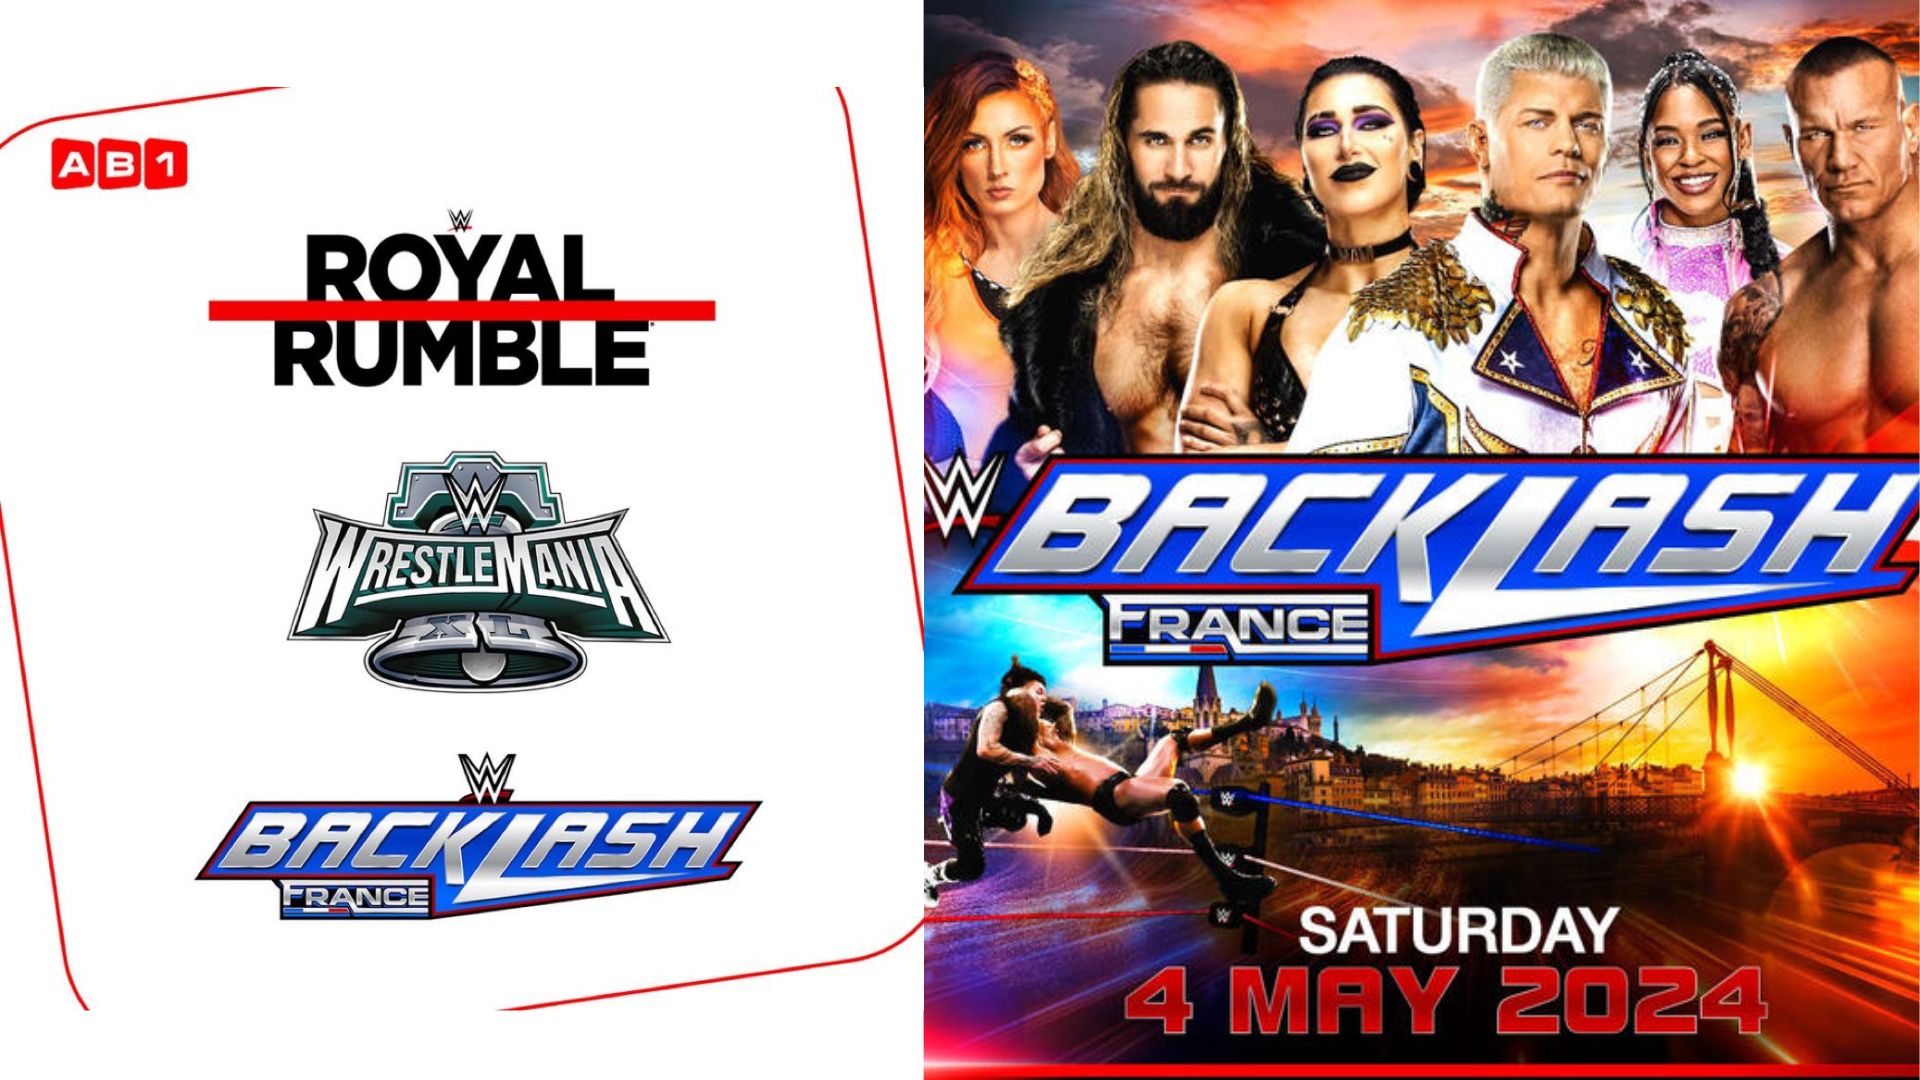 WWE : Royal Rumble, WrestleMania 40 et Backlash France seront diffusés sur AB1.